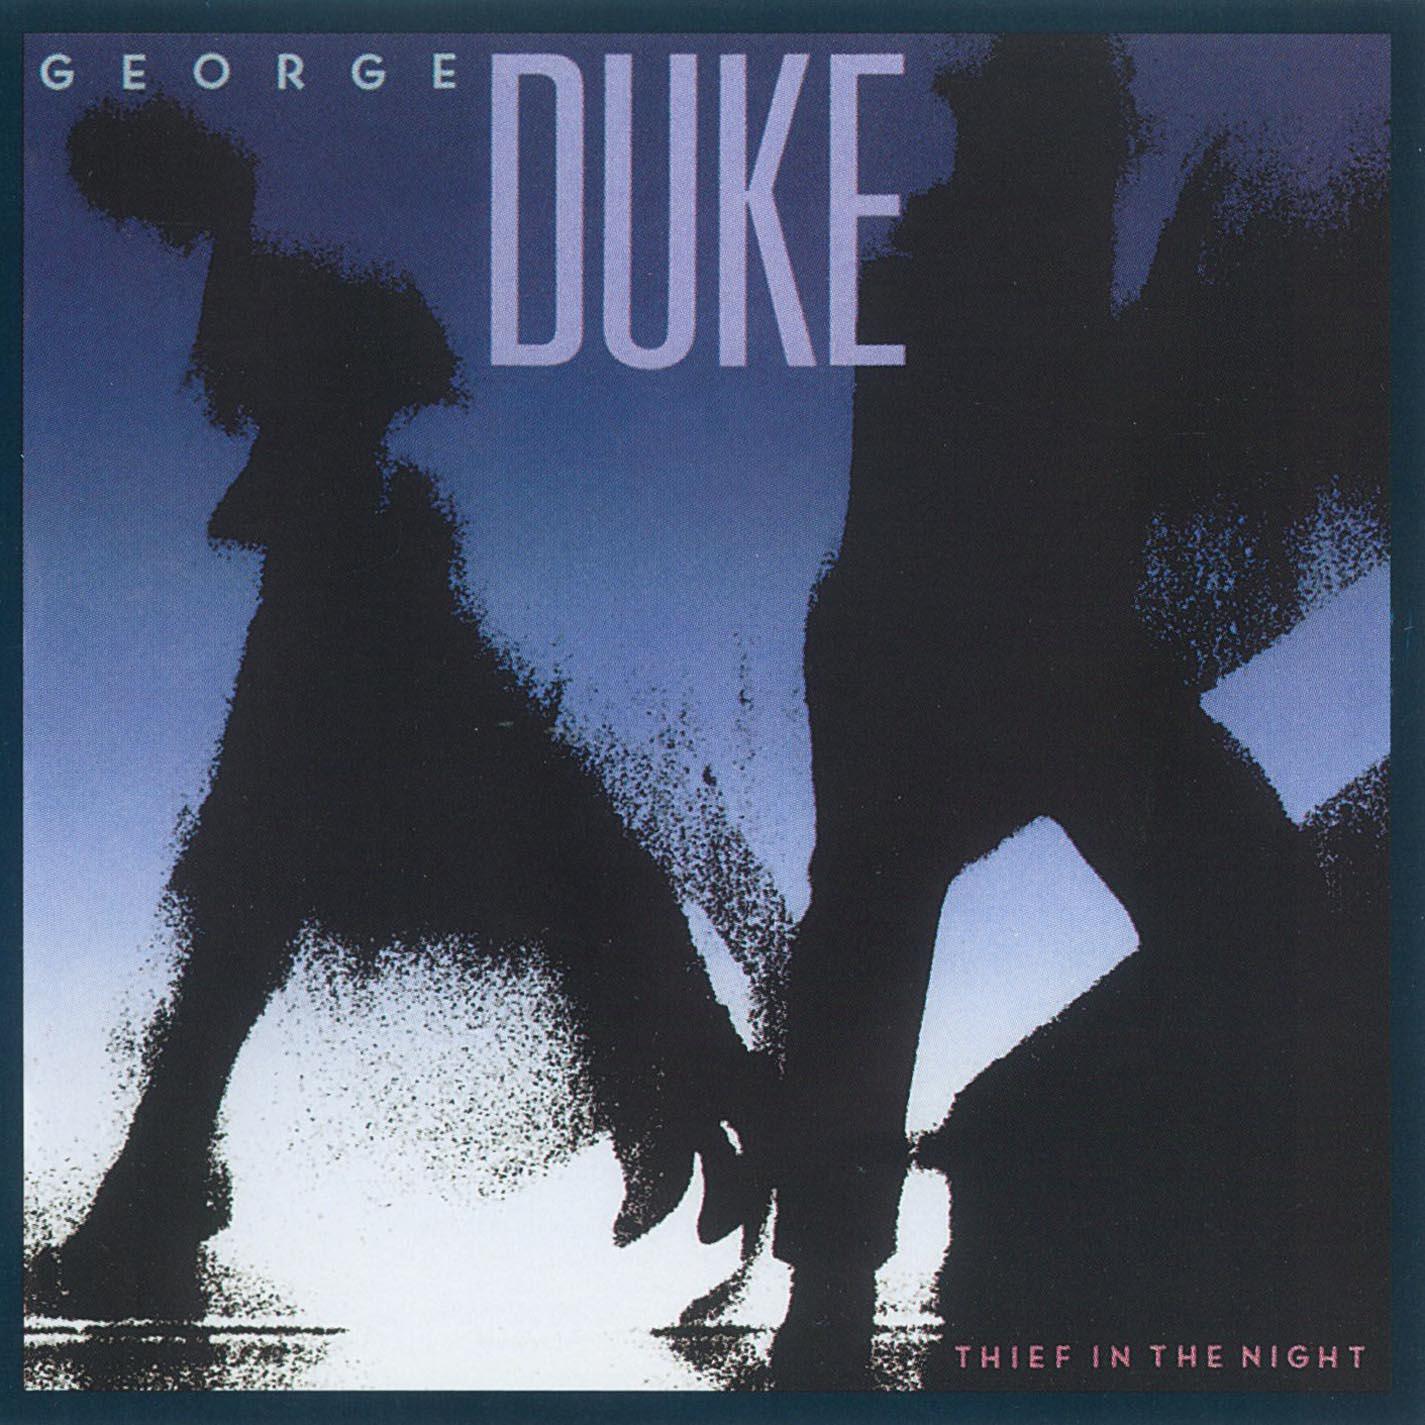 George Duke - Ride